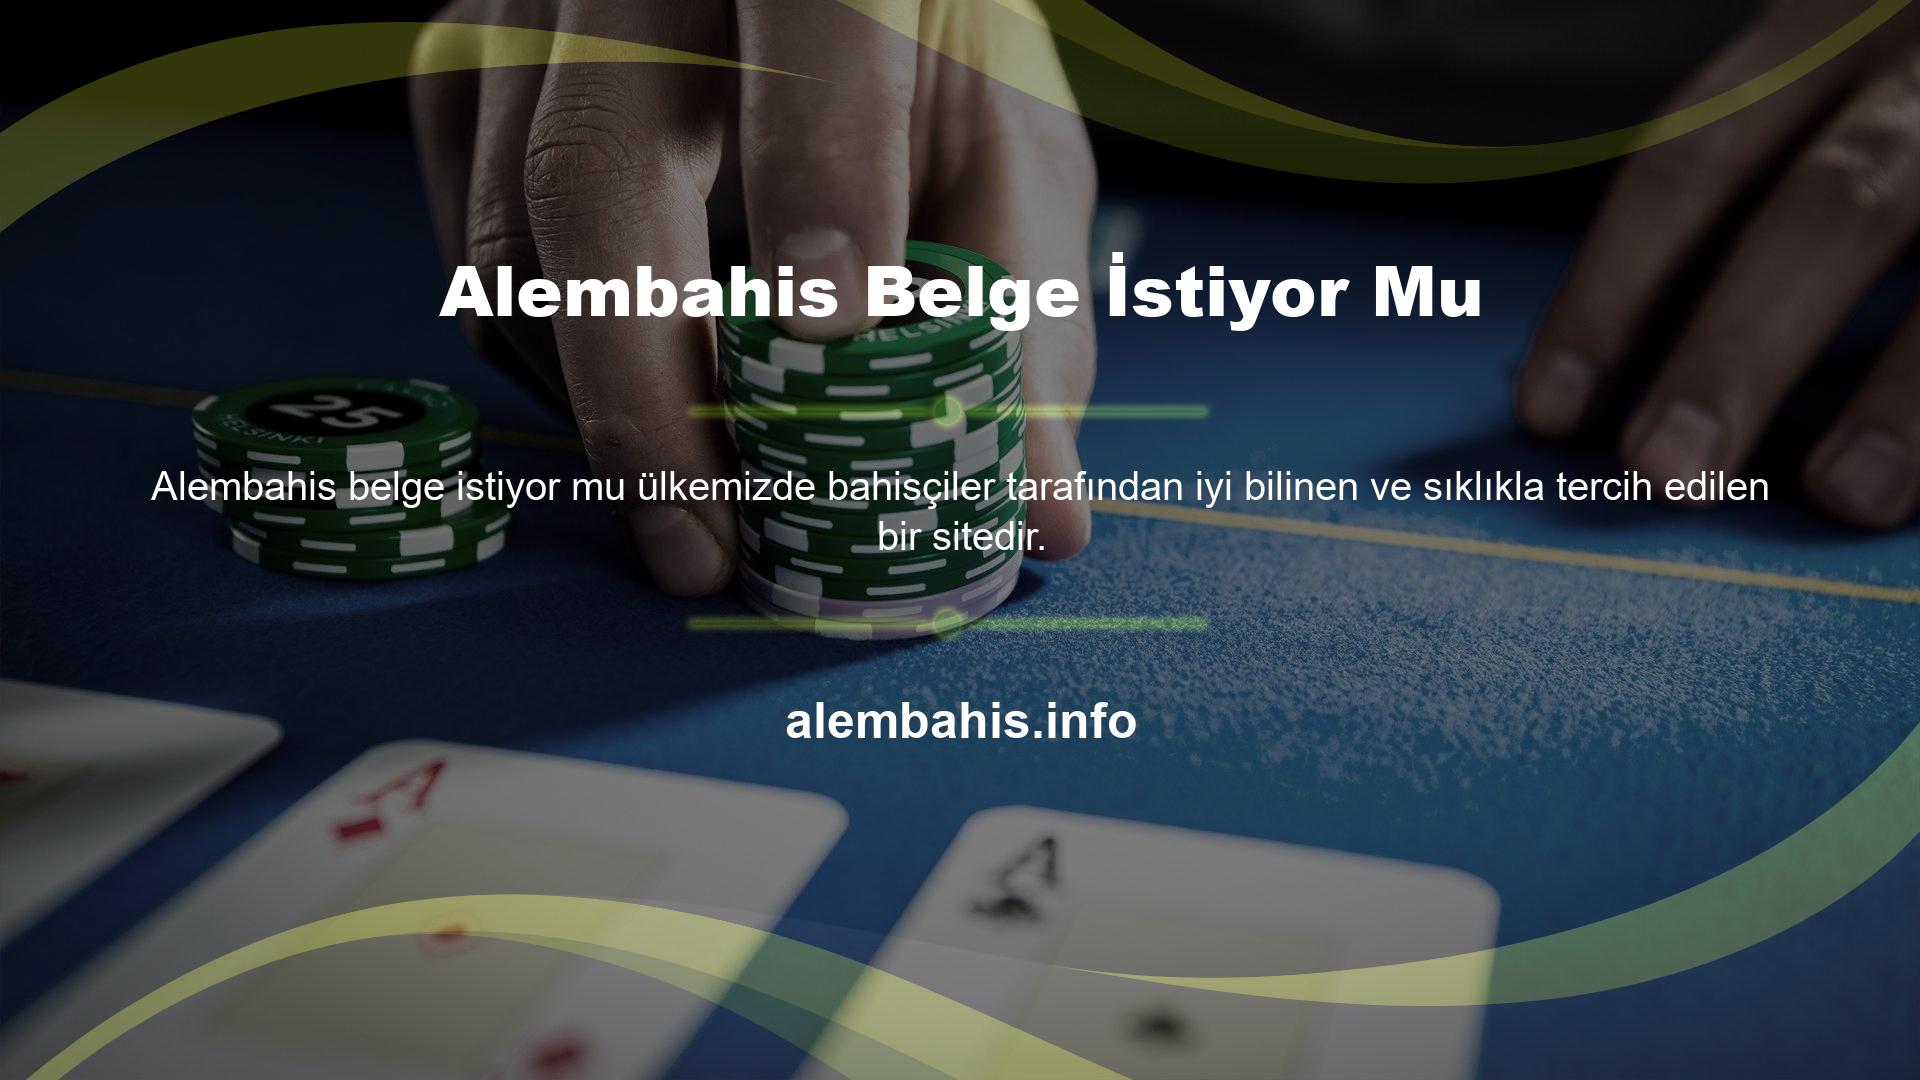 Alembahis ; bahis, canlı bahis ve canlı casino gibi alternatif bahislerde ortalama veya mükemmel hizmet sunmaktadır